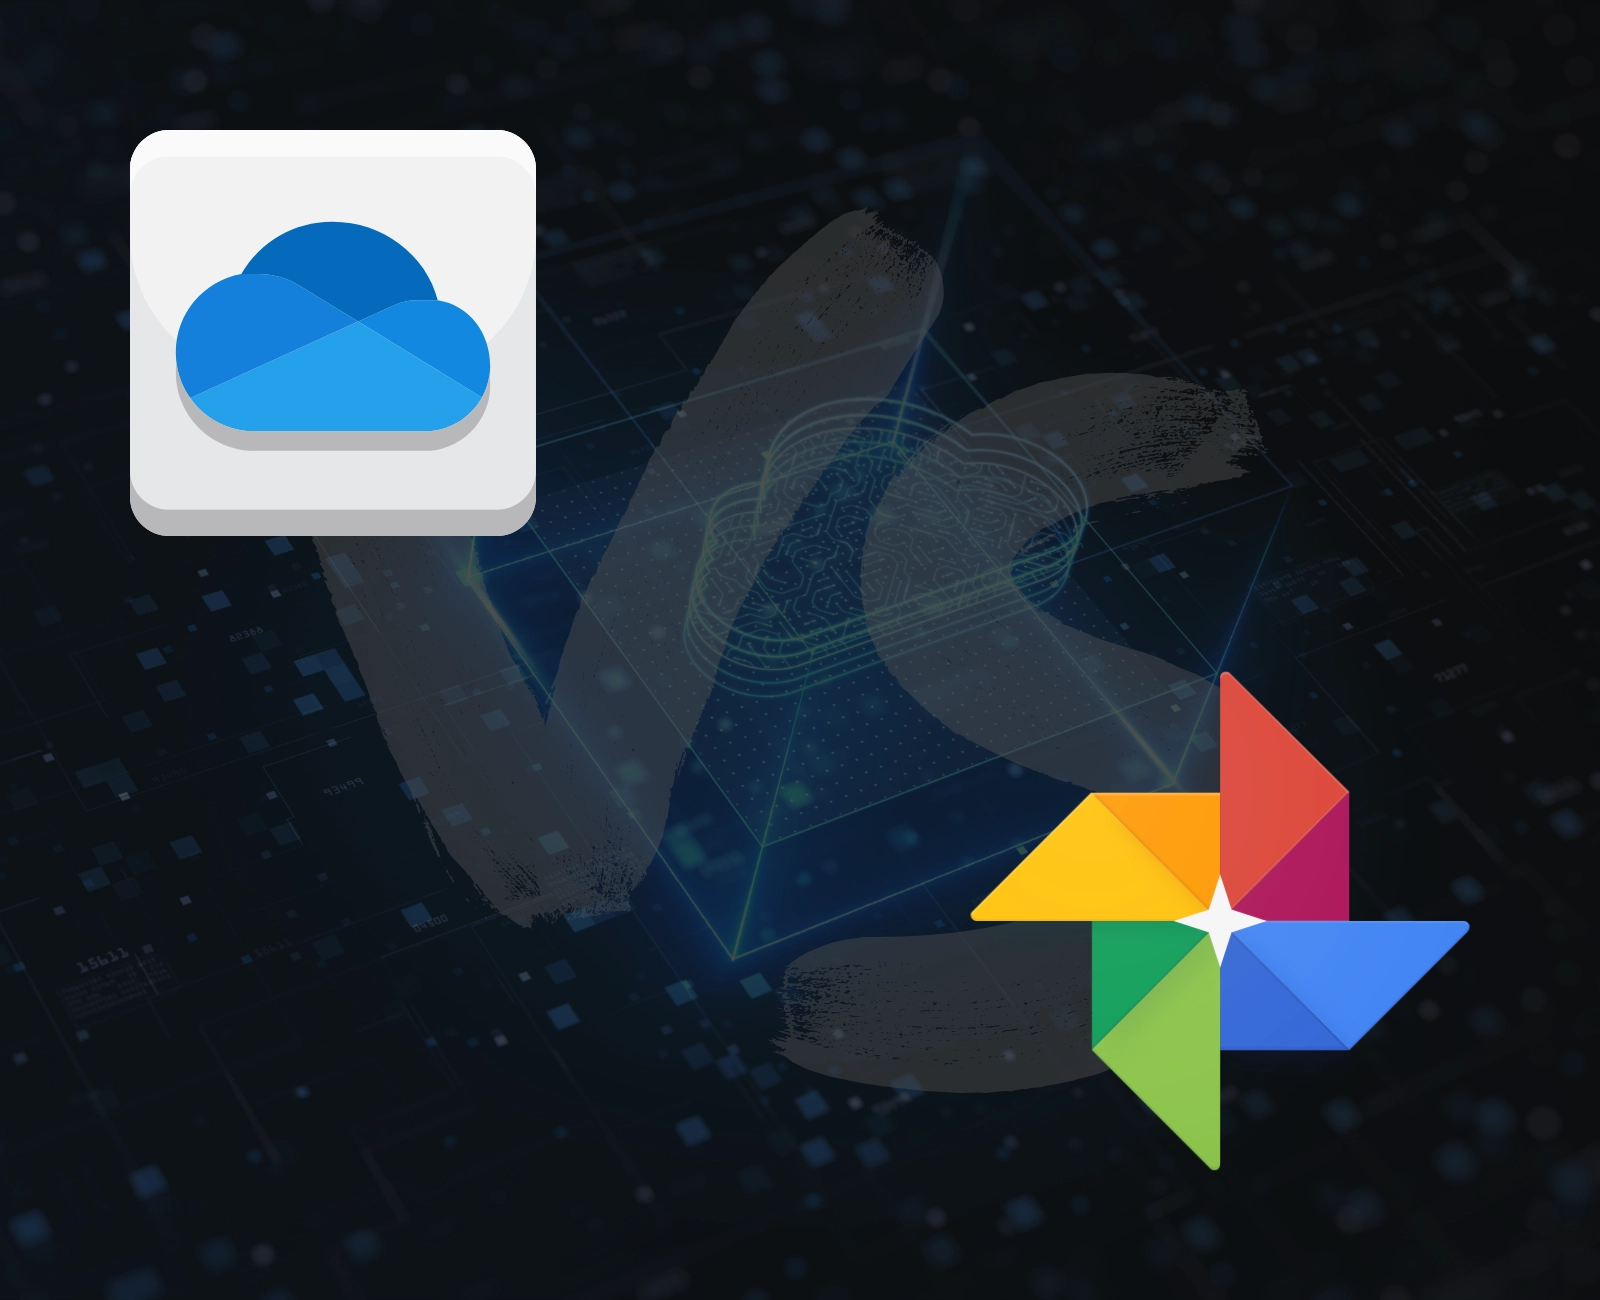 Google Photos vs OneDrive